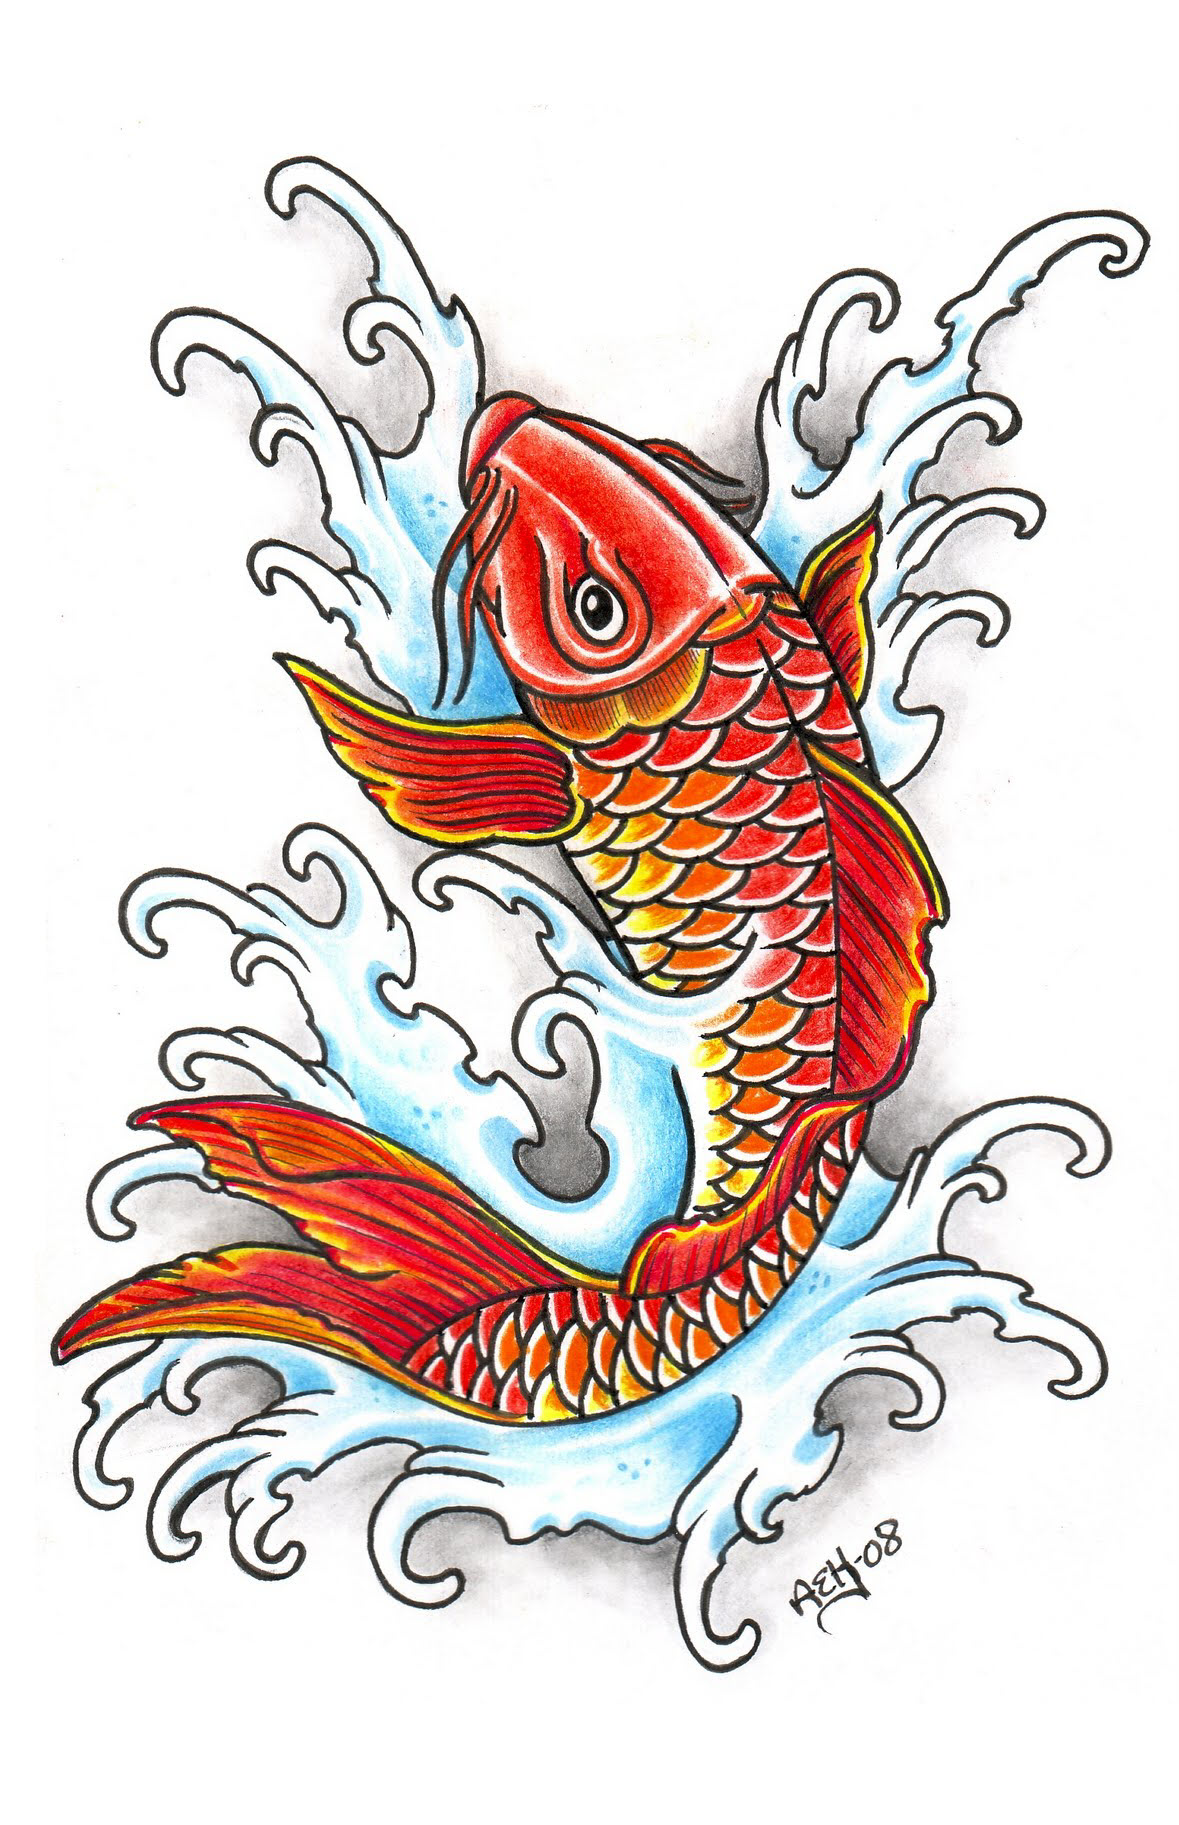 Cách vẽ cá chép đơn giản nhưng vẫn đầy tinh tế và cuốn hút. Hãy khám phá những bí quyết và tips vẽ cá chép đẹp nhất để thỏa mãn đam mê tranh vẽ nhé!